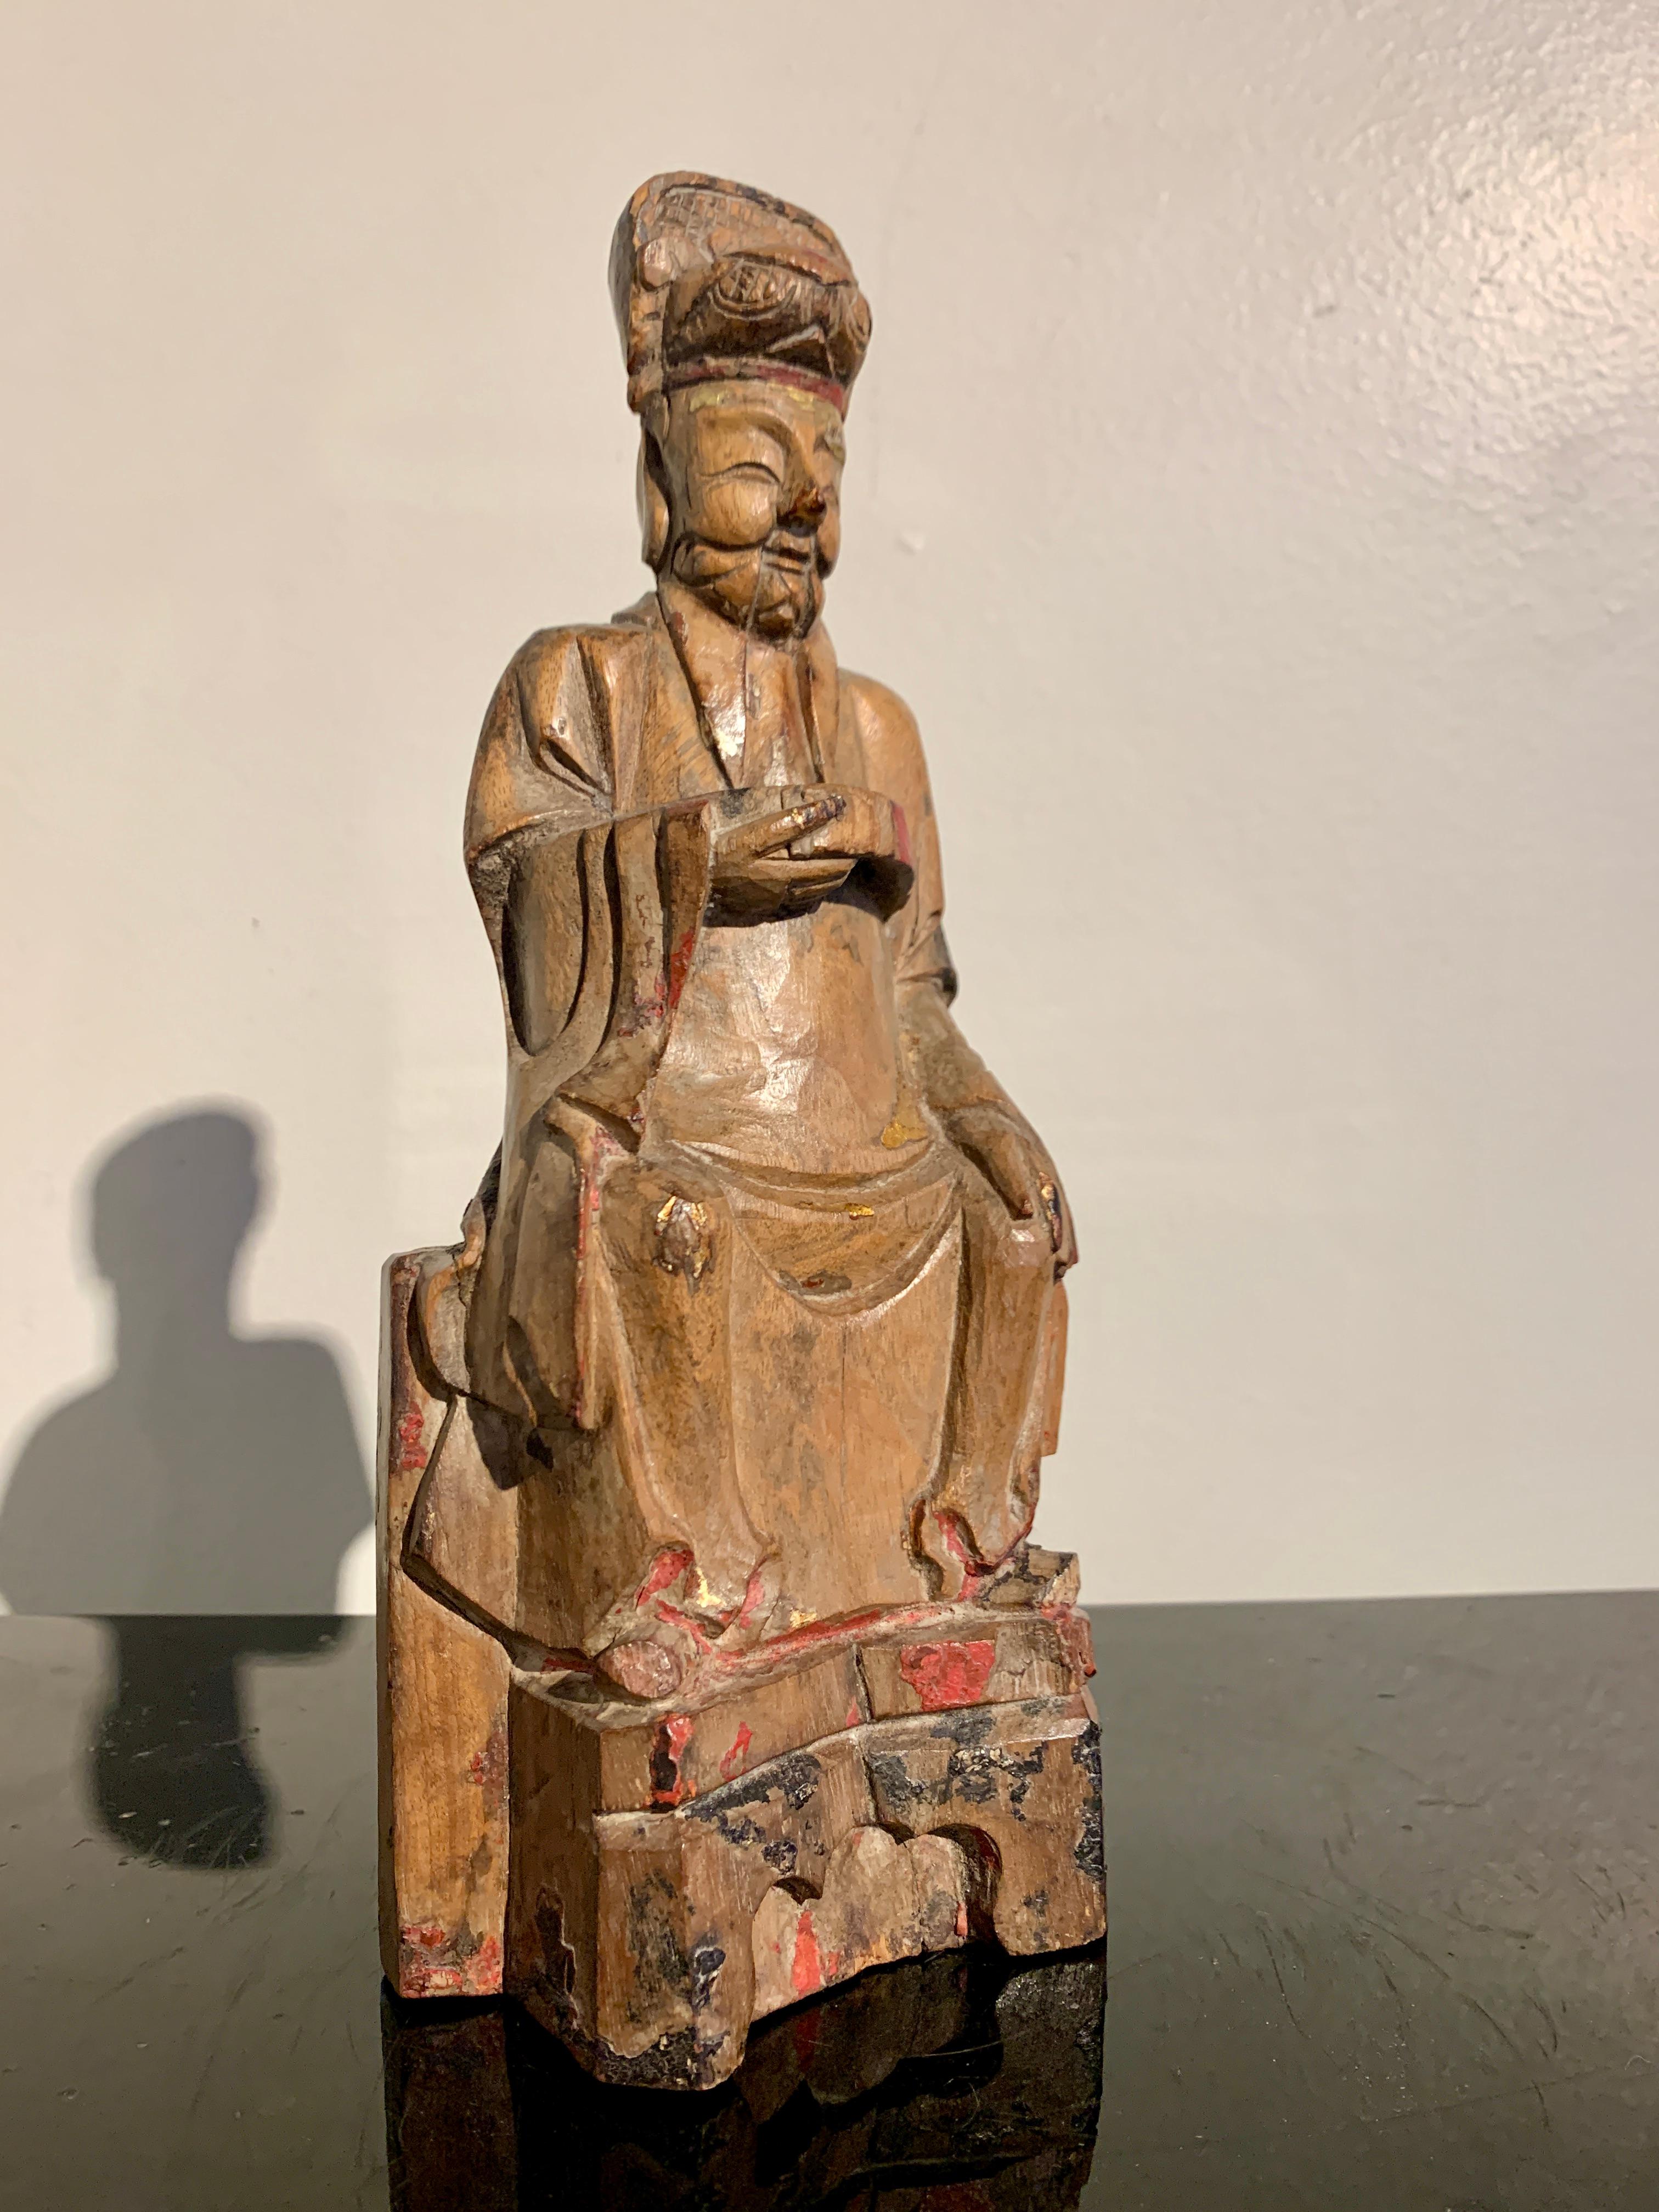 Eine charmante chinesische geschnitzte Holzfigur einer taoistischen Gottheit, möglicherweise für ein Haus oder einen persönlichen Schrein, späte Ming- oder frühe Qing-Dynastie, Mitte des 17. Jahrhunderts, Südchina. 

Die nicht identifizierte